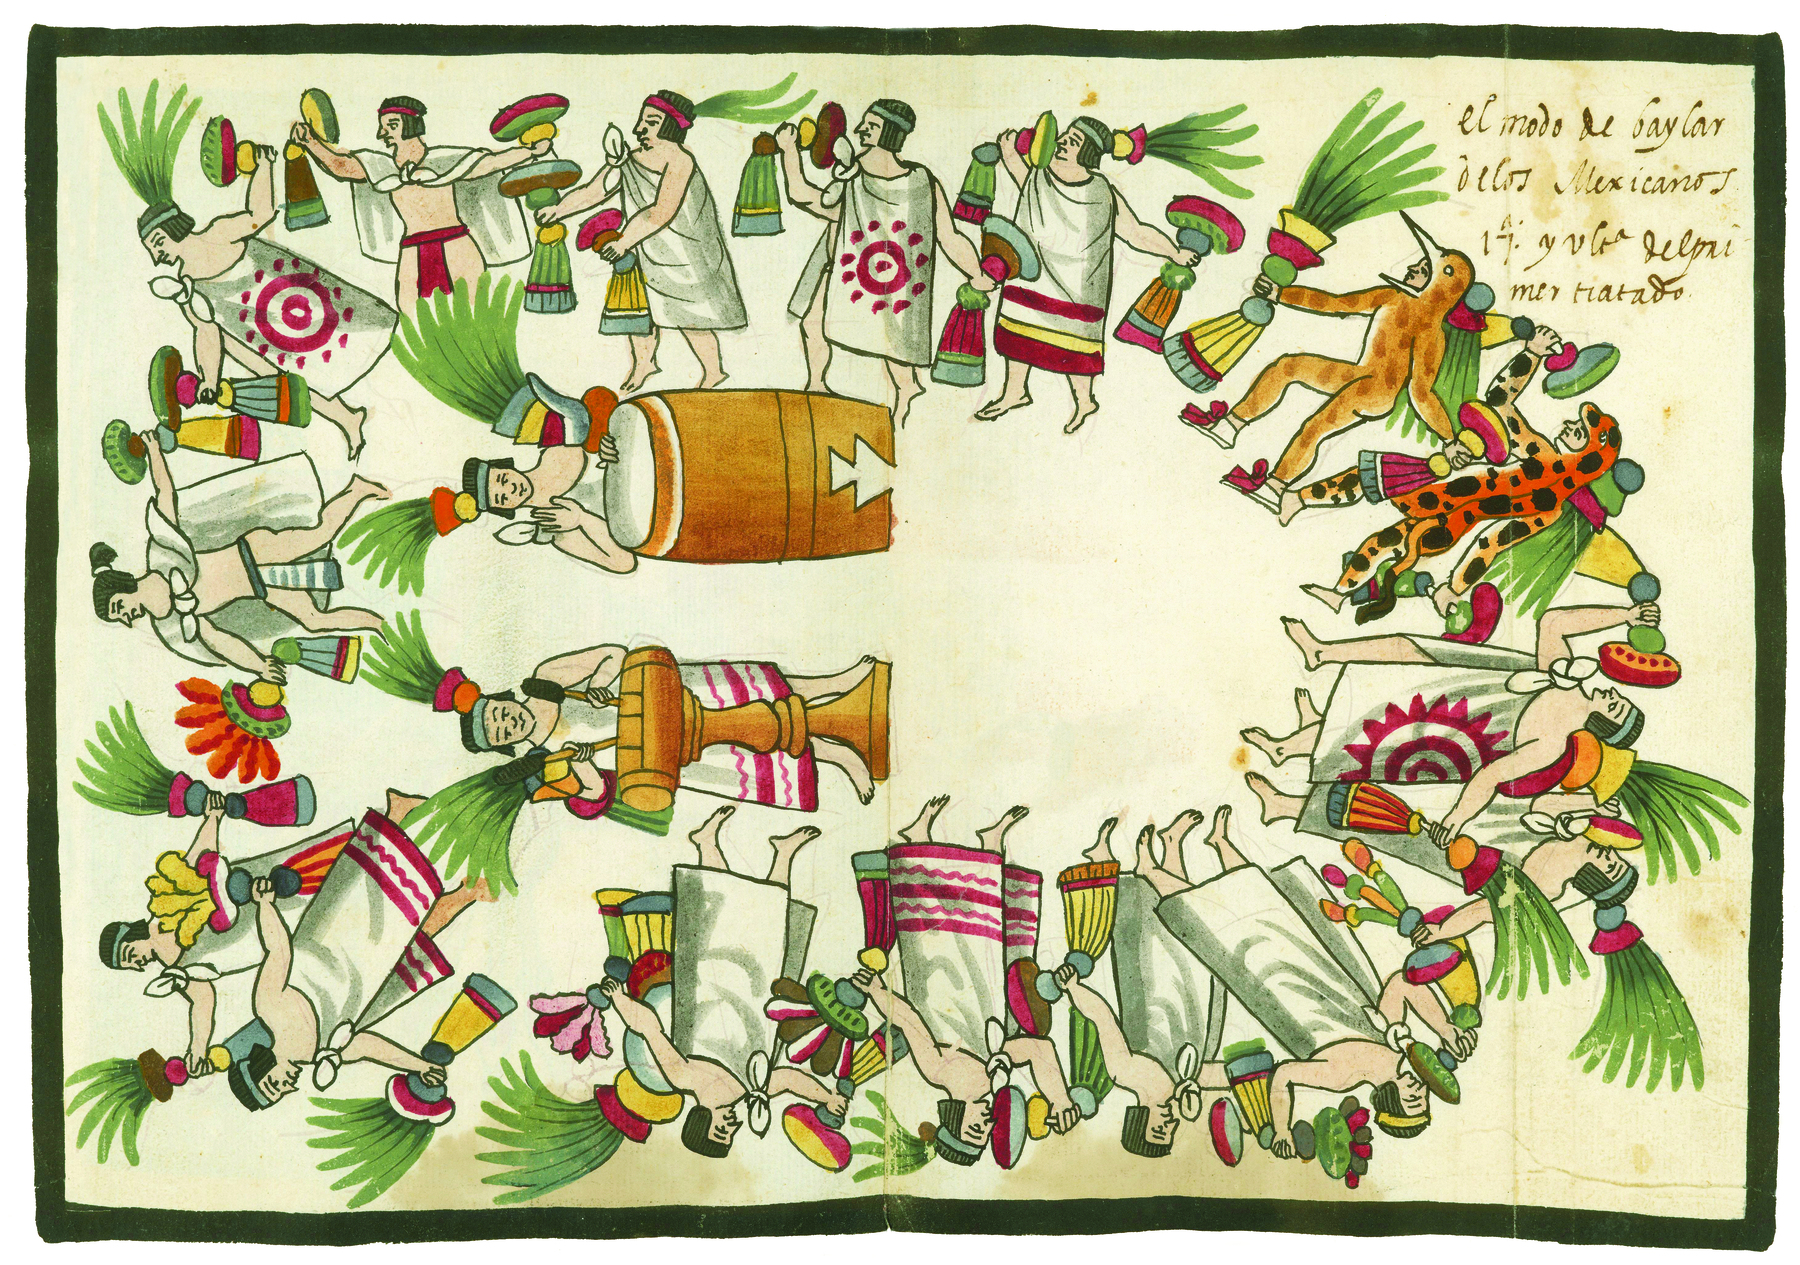 Ilustração. Aquarela representando uma dança do povo asteca. Dispostos em uma roda,  vários homens indígenas com cocares de penachos verdes e túnicas brancas com desenhos vermelhos formando linhas na barra, ou círculos rodeados de pontos com com raios. Alguns usam uma tanga e a túnica nos ombros. Na roda, há duas pessoas fantasiadas de animais: uma de tigre e outra de pássaro. No centro da roda, há duas pessoas tocando tambores. Nas mãos, todos levam objetos adornados de diferentes maneiras.